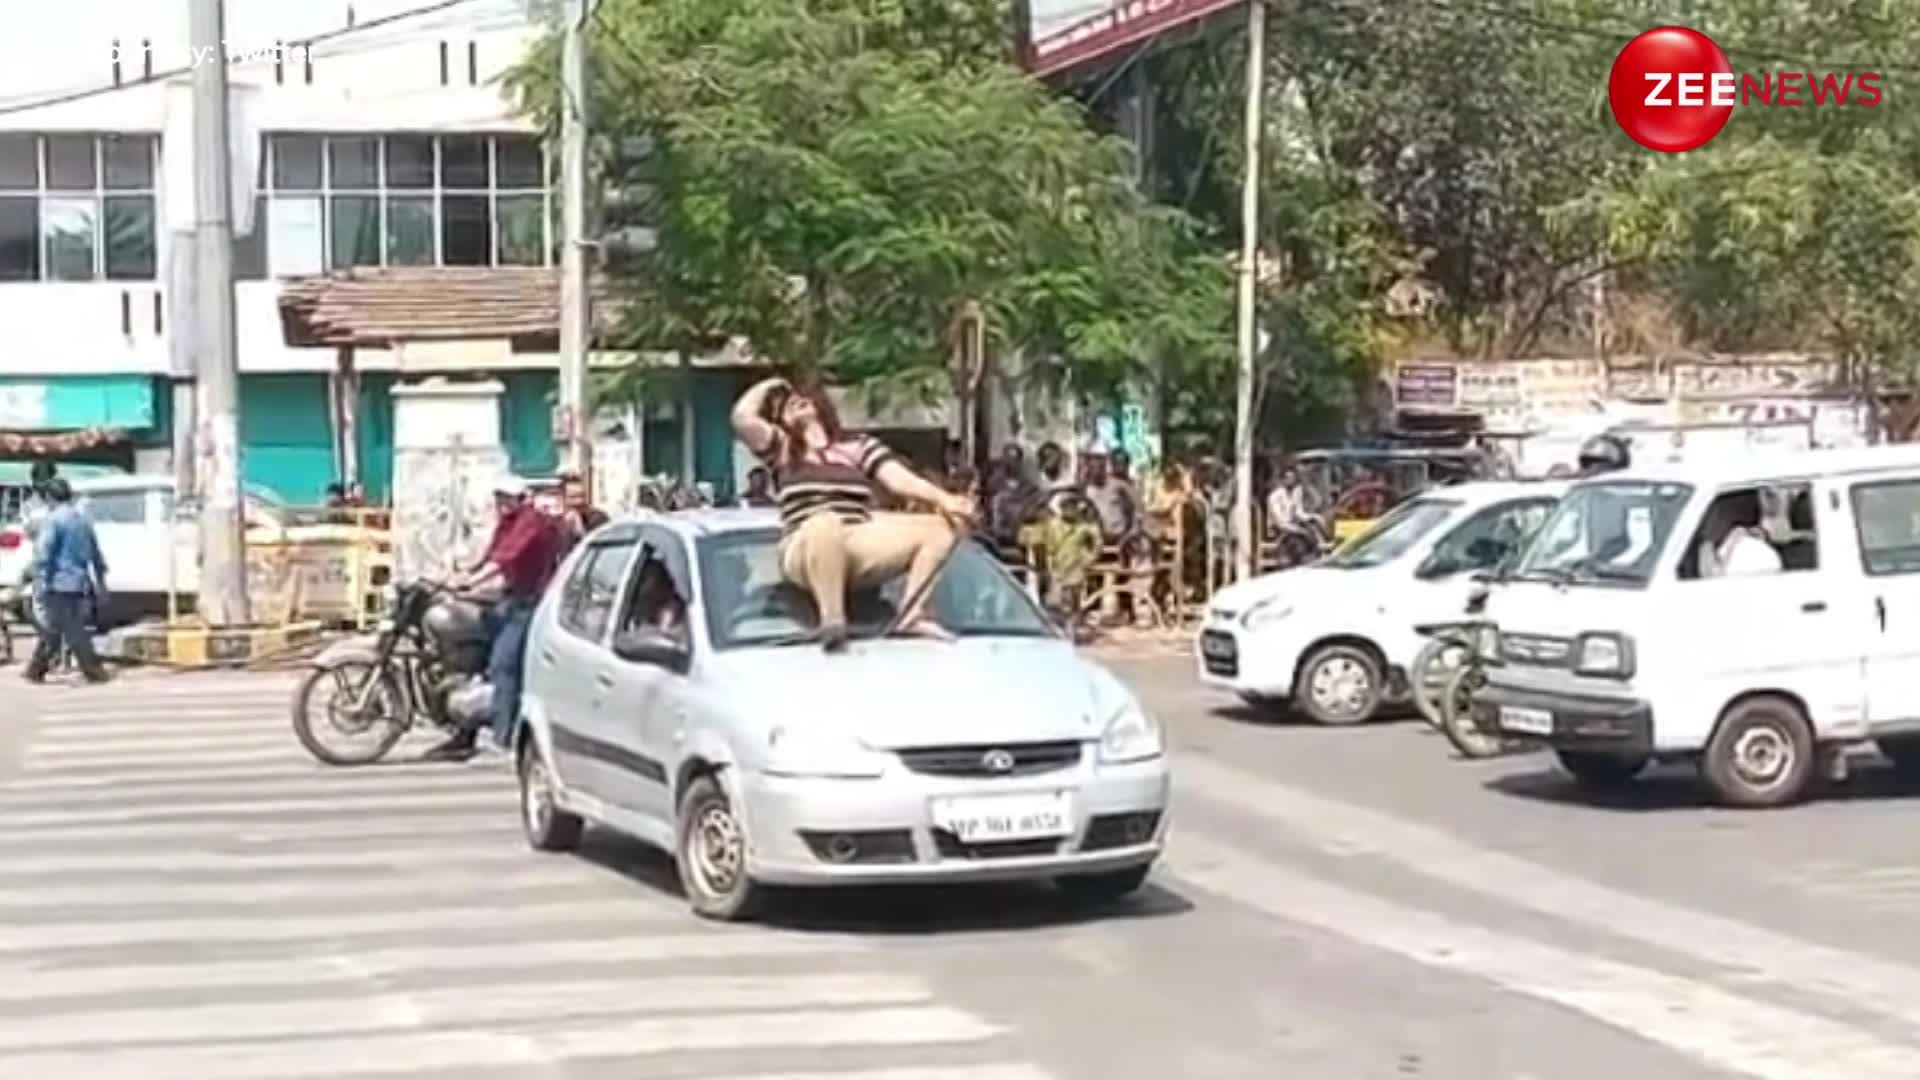 Gwalior Viral Video: प्रेमी से हुआ झगड़ा, ट्रैफिक लाइट पर रोकी कार, फिर ऊपर खड़े होकर नाचने लगीं लड़की, वीडियो हुआ वायरल